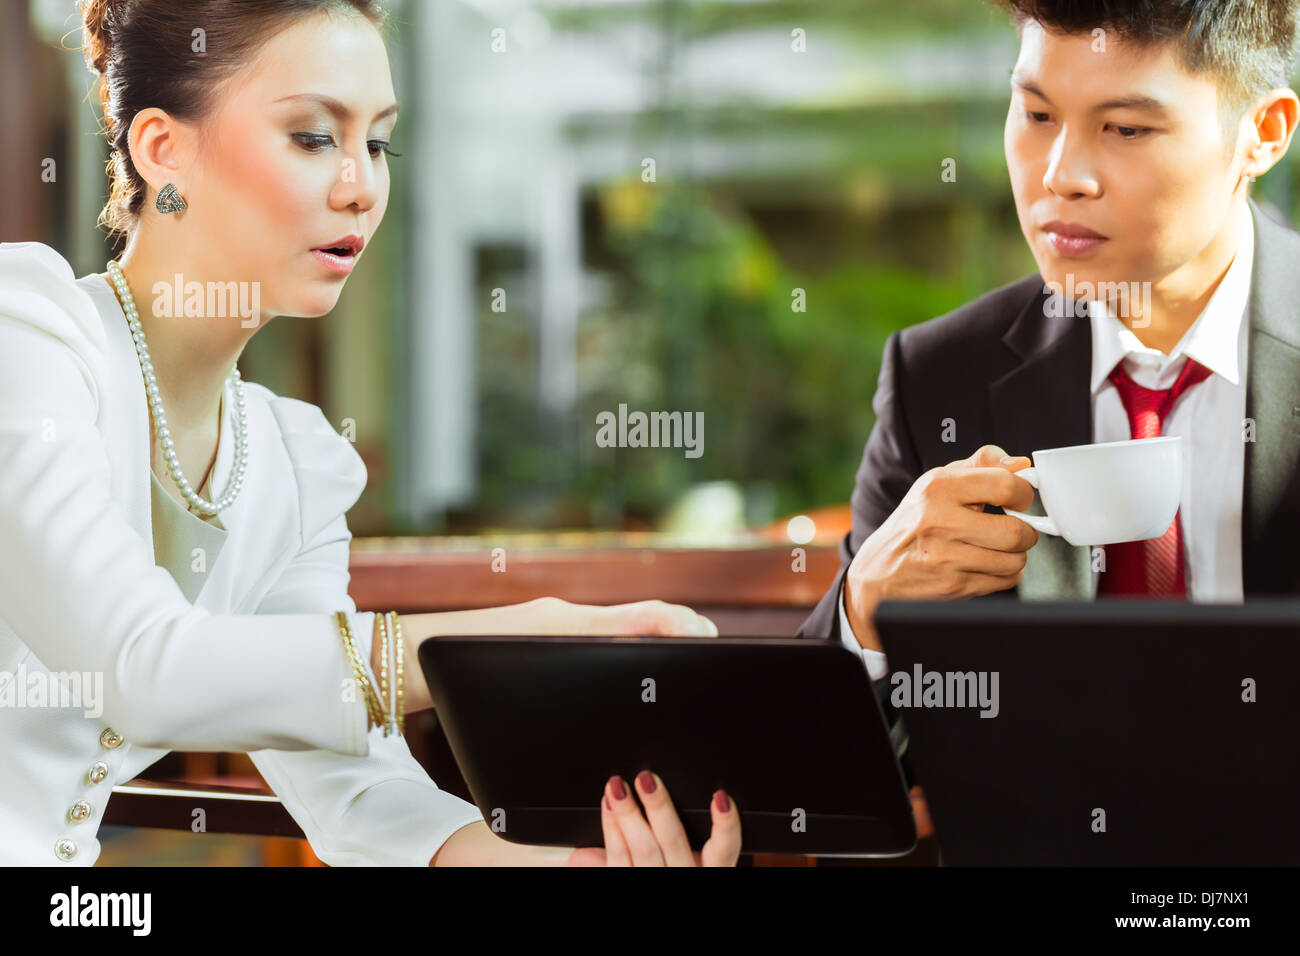 Zwei asiatische chinesische Büro Personen oder Geschäftsmann und Geschäftsfrau, die mit einem Business-Meeting in einer Hotellobby Dokumente diskutieren Stockfoto